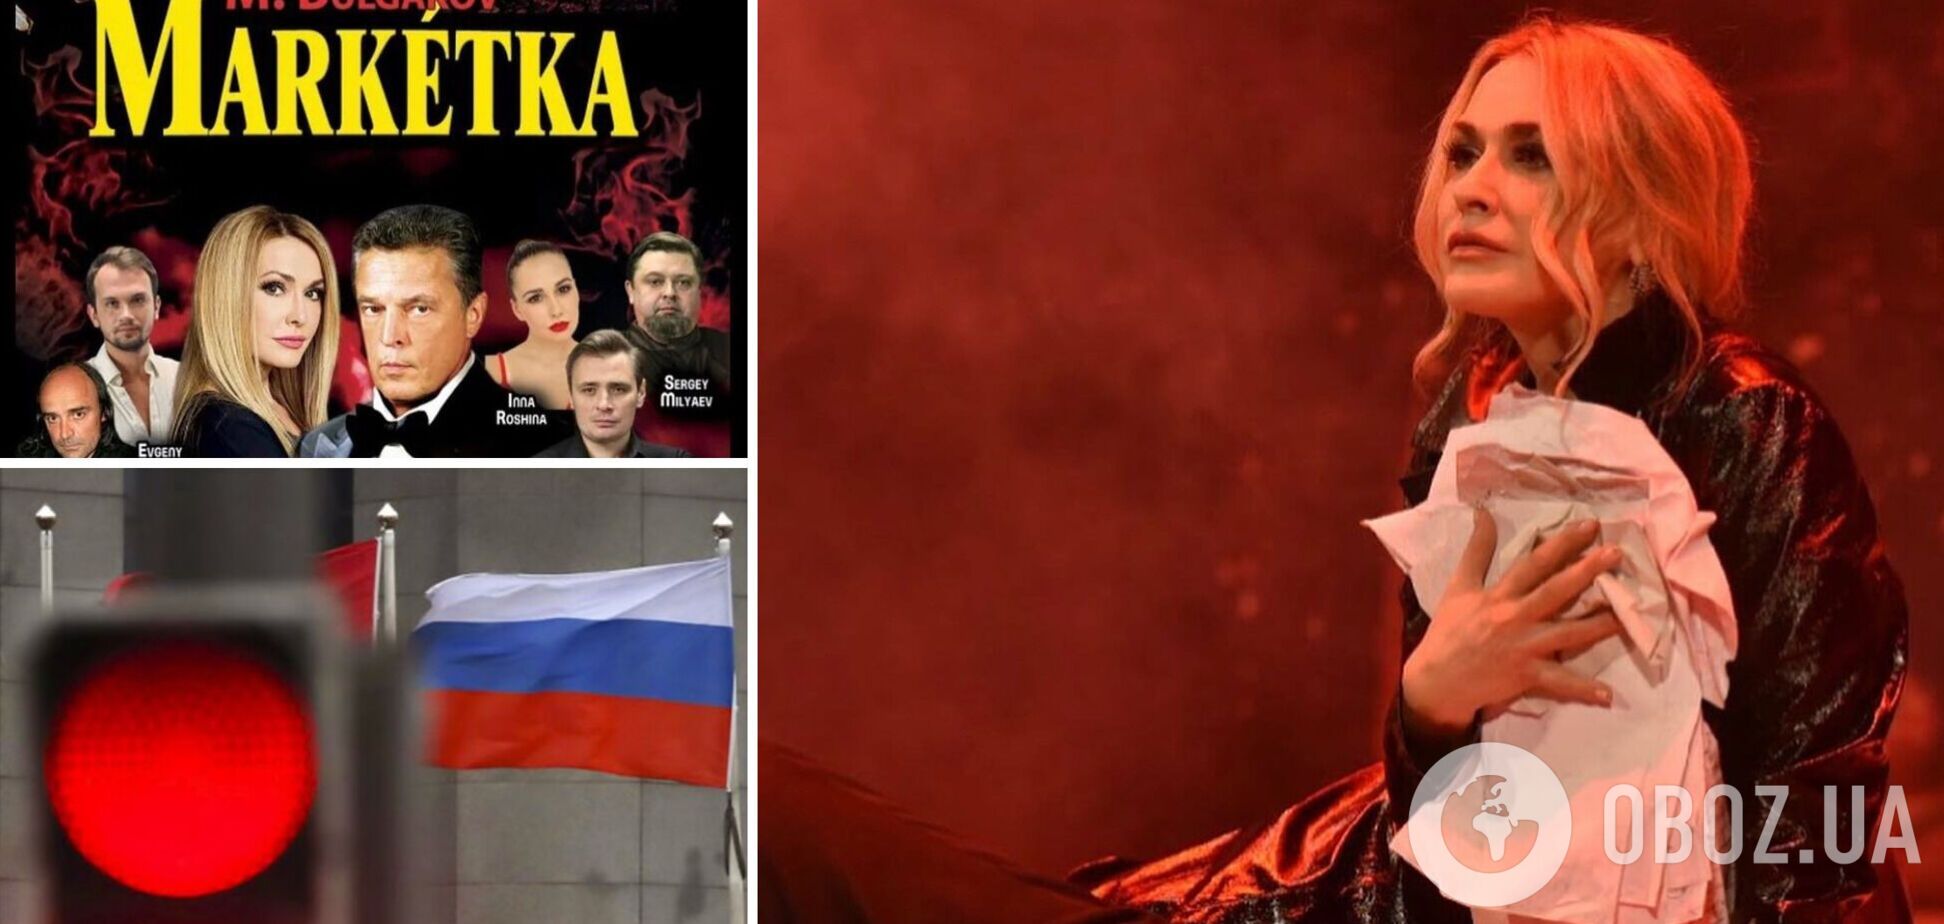 Сумскую обвинили в 'сотрудничестве с россиянами' и участии в русскоязычном представлении: актриса резко ответила хейтерам